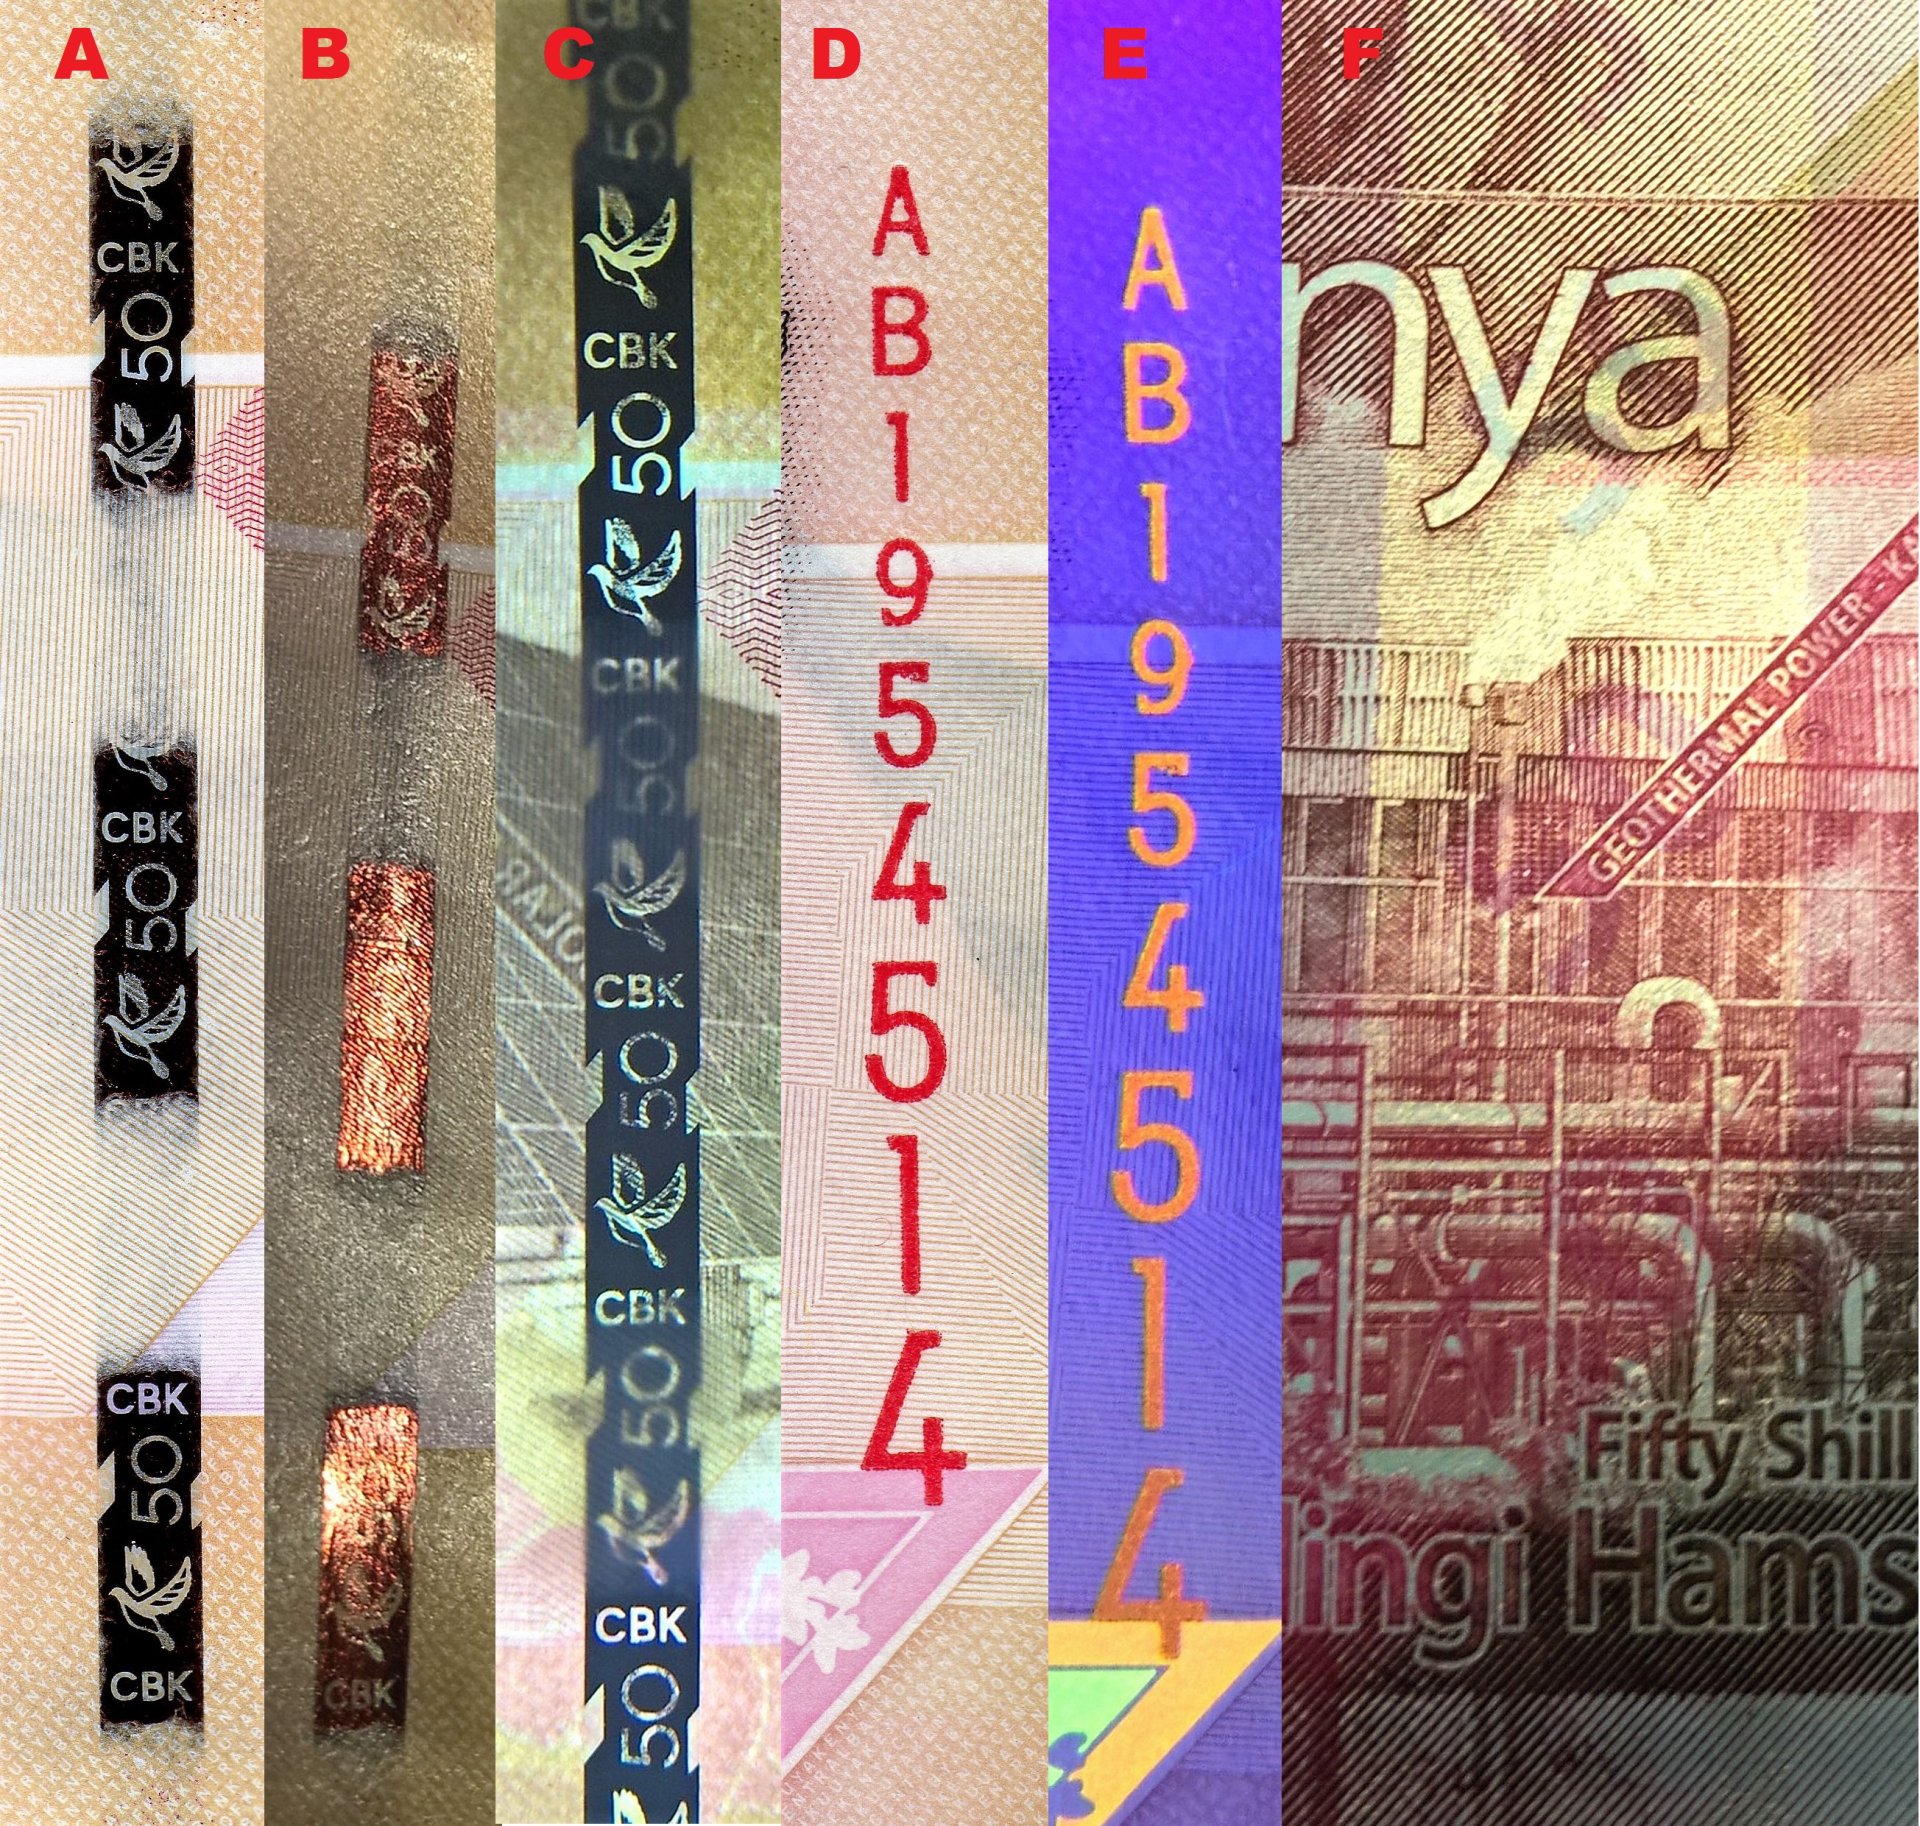 9. A)  Bezpečnostní intermitentní proužek B) Změna barvy na kovově měděnou při náklonu bankovky kolem vertikální osy C) V protisvětle se jeví bezpečnostní proužek jako souvislý D) Vertikální ascendentní červené sériové číslo E) Totéž sériové číslo pod UV